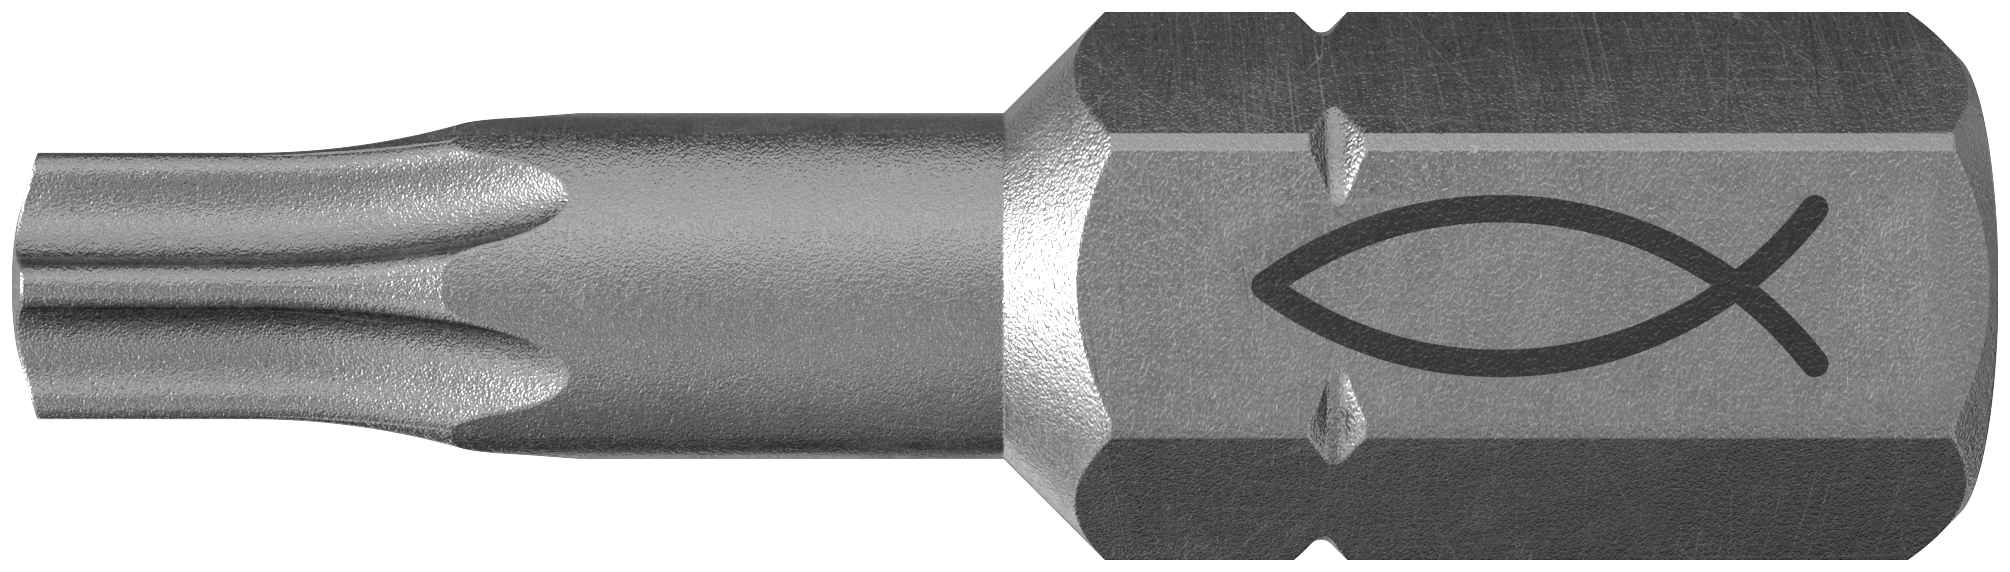 fischer Inserto per avvitatore FPB T 10 PROFI Bit W 10 (10 Pz.) L'inserto per trapano e avvitatore, in acciaio di alta qualit con elevata resistenza all?abrasione per uso professionale.